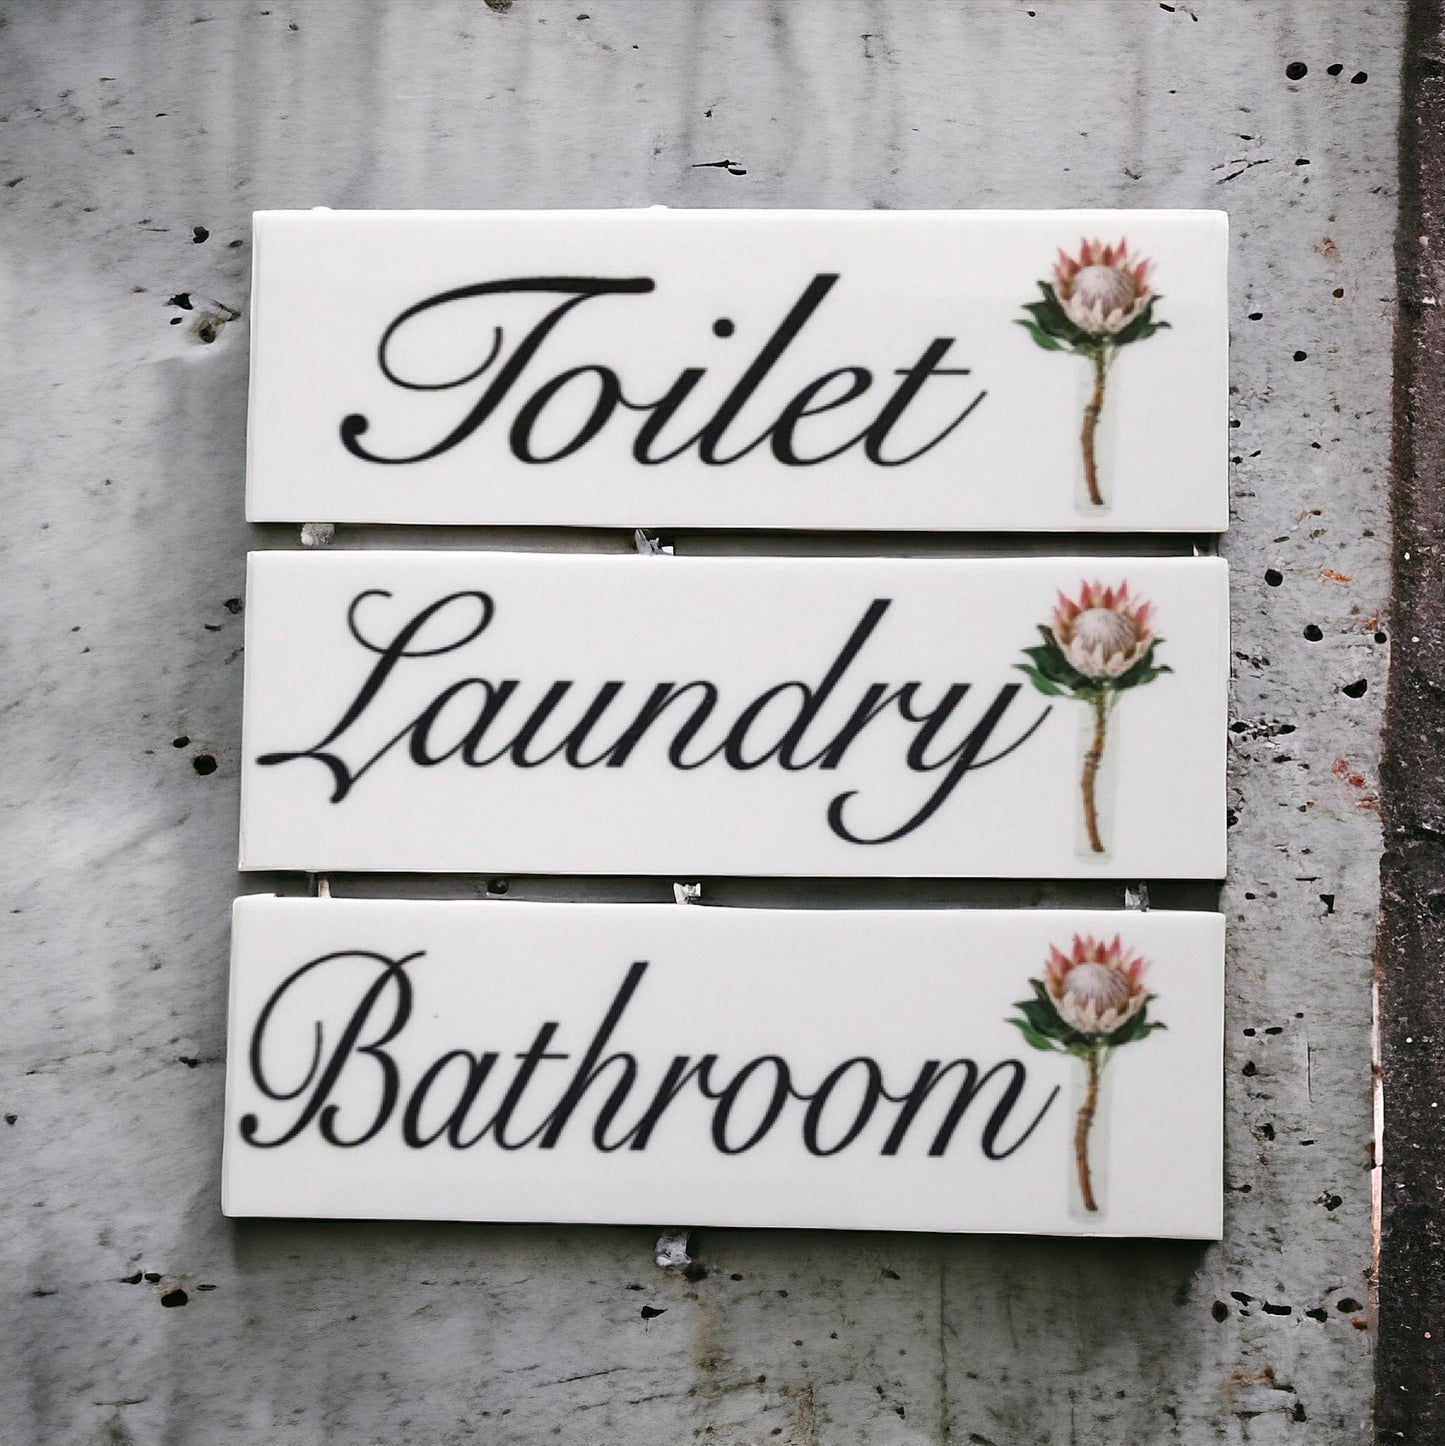 Protea Toilet Laundry Bathroom Door Sign